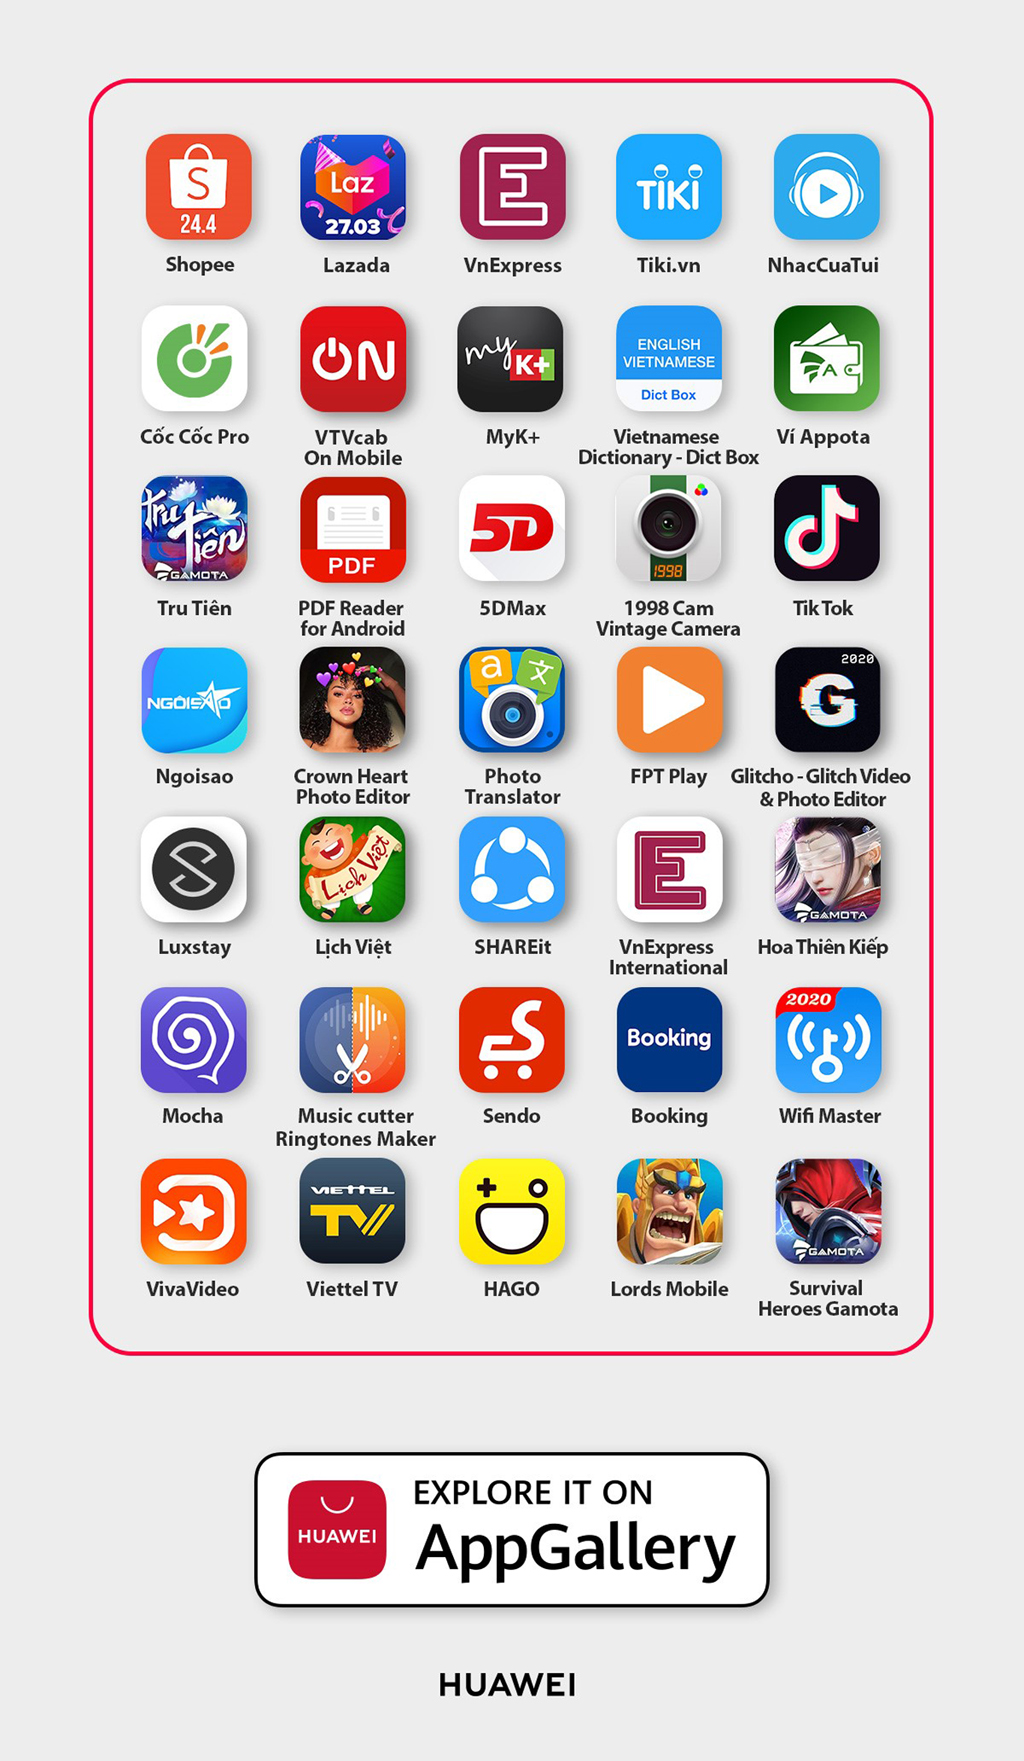 Người dùng có thể tải nhiều ứng dụng phổ biến trên Huawei AppGallery